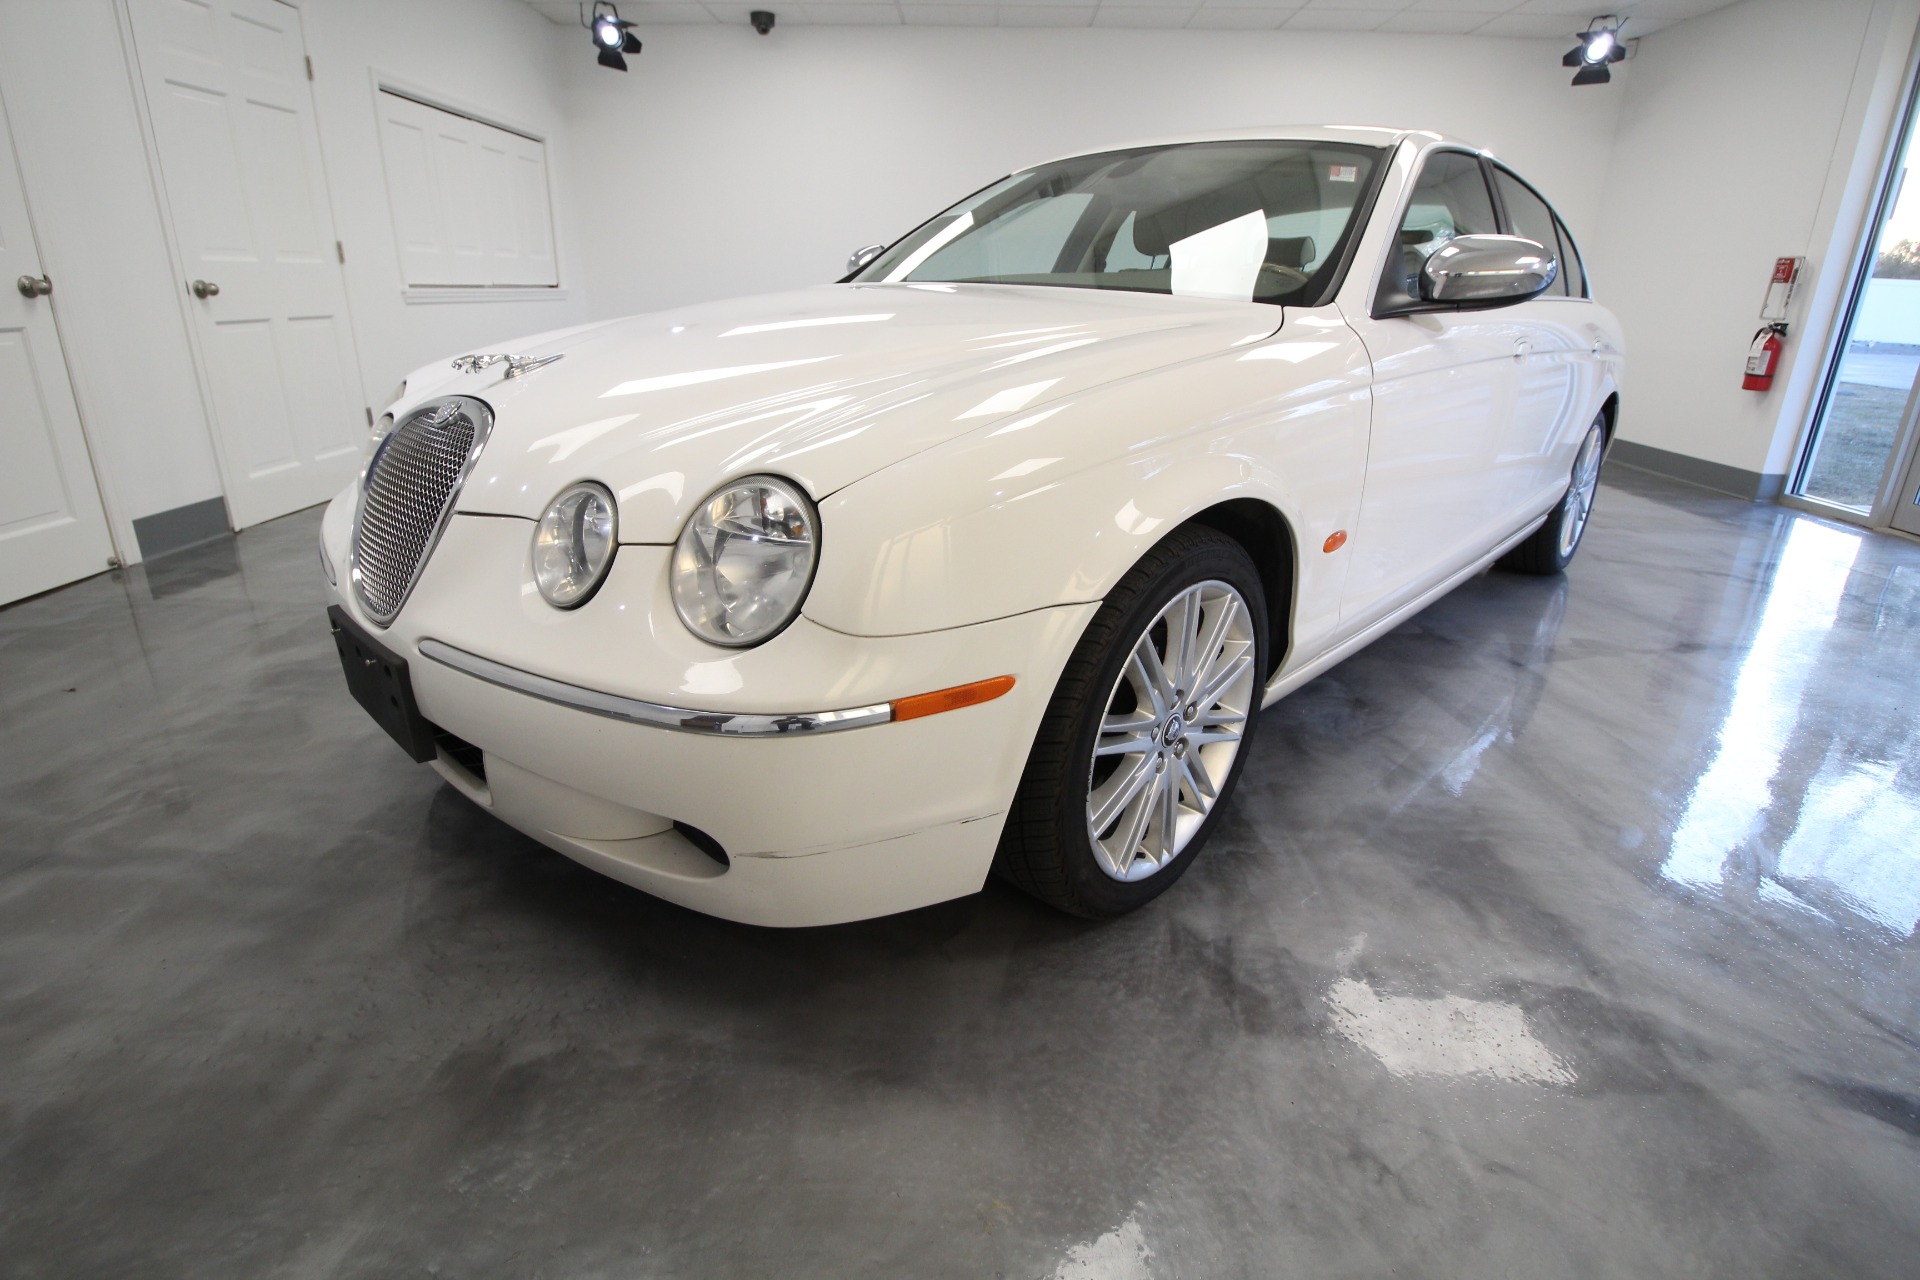 2008 Jaguar S-Type For Sale $11990 | 21007 Bul Auto NY